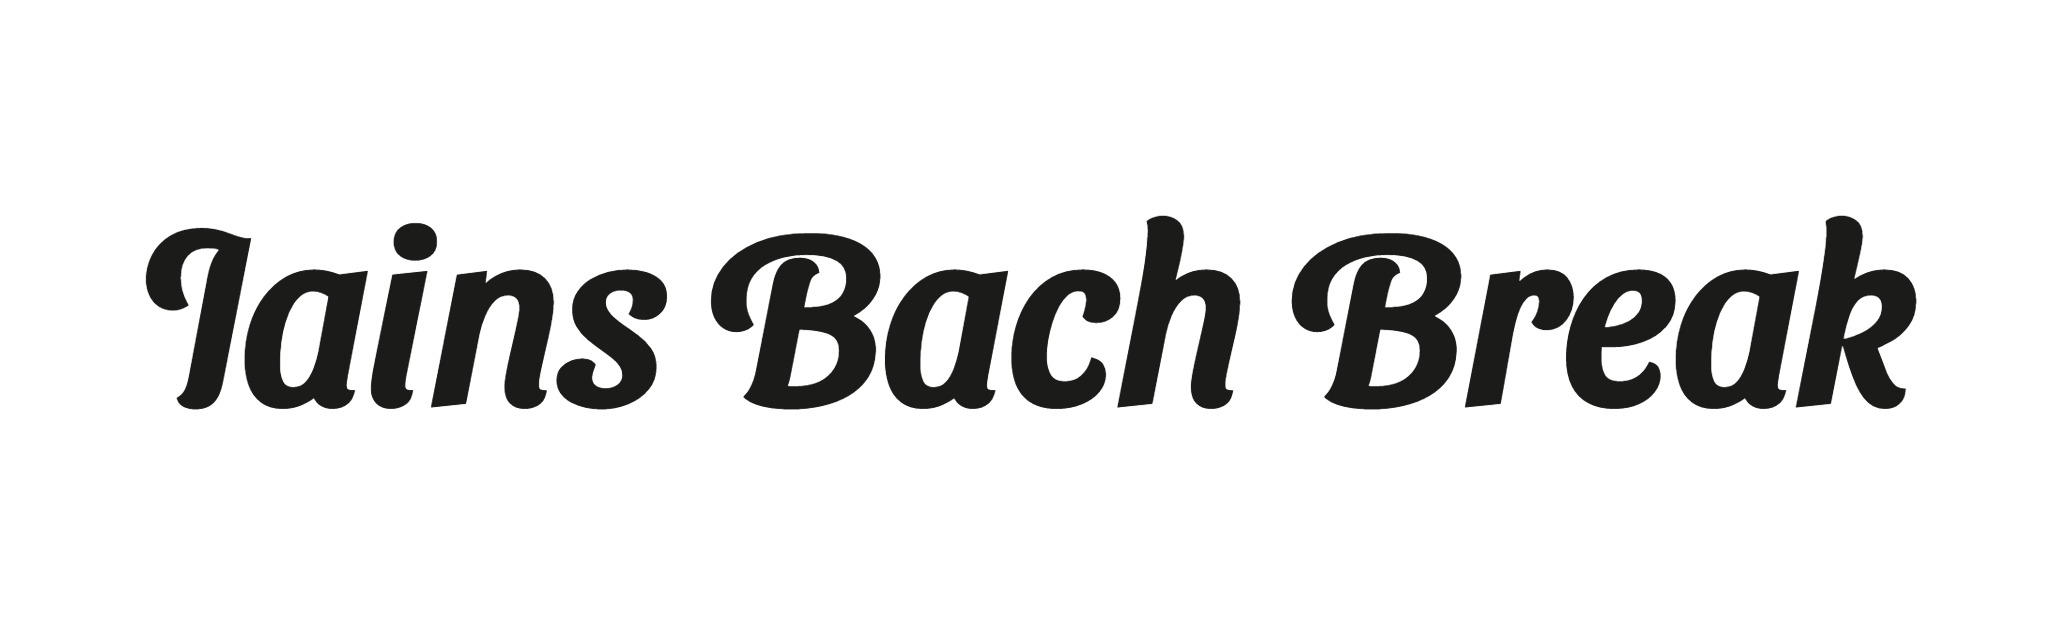 Iains Bach Break